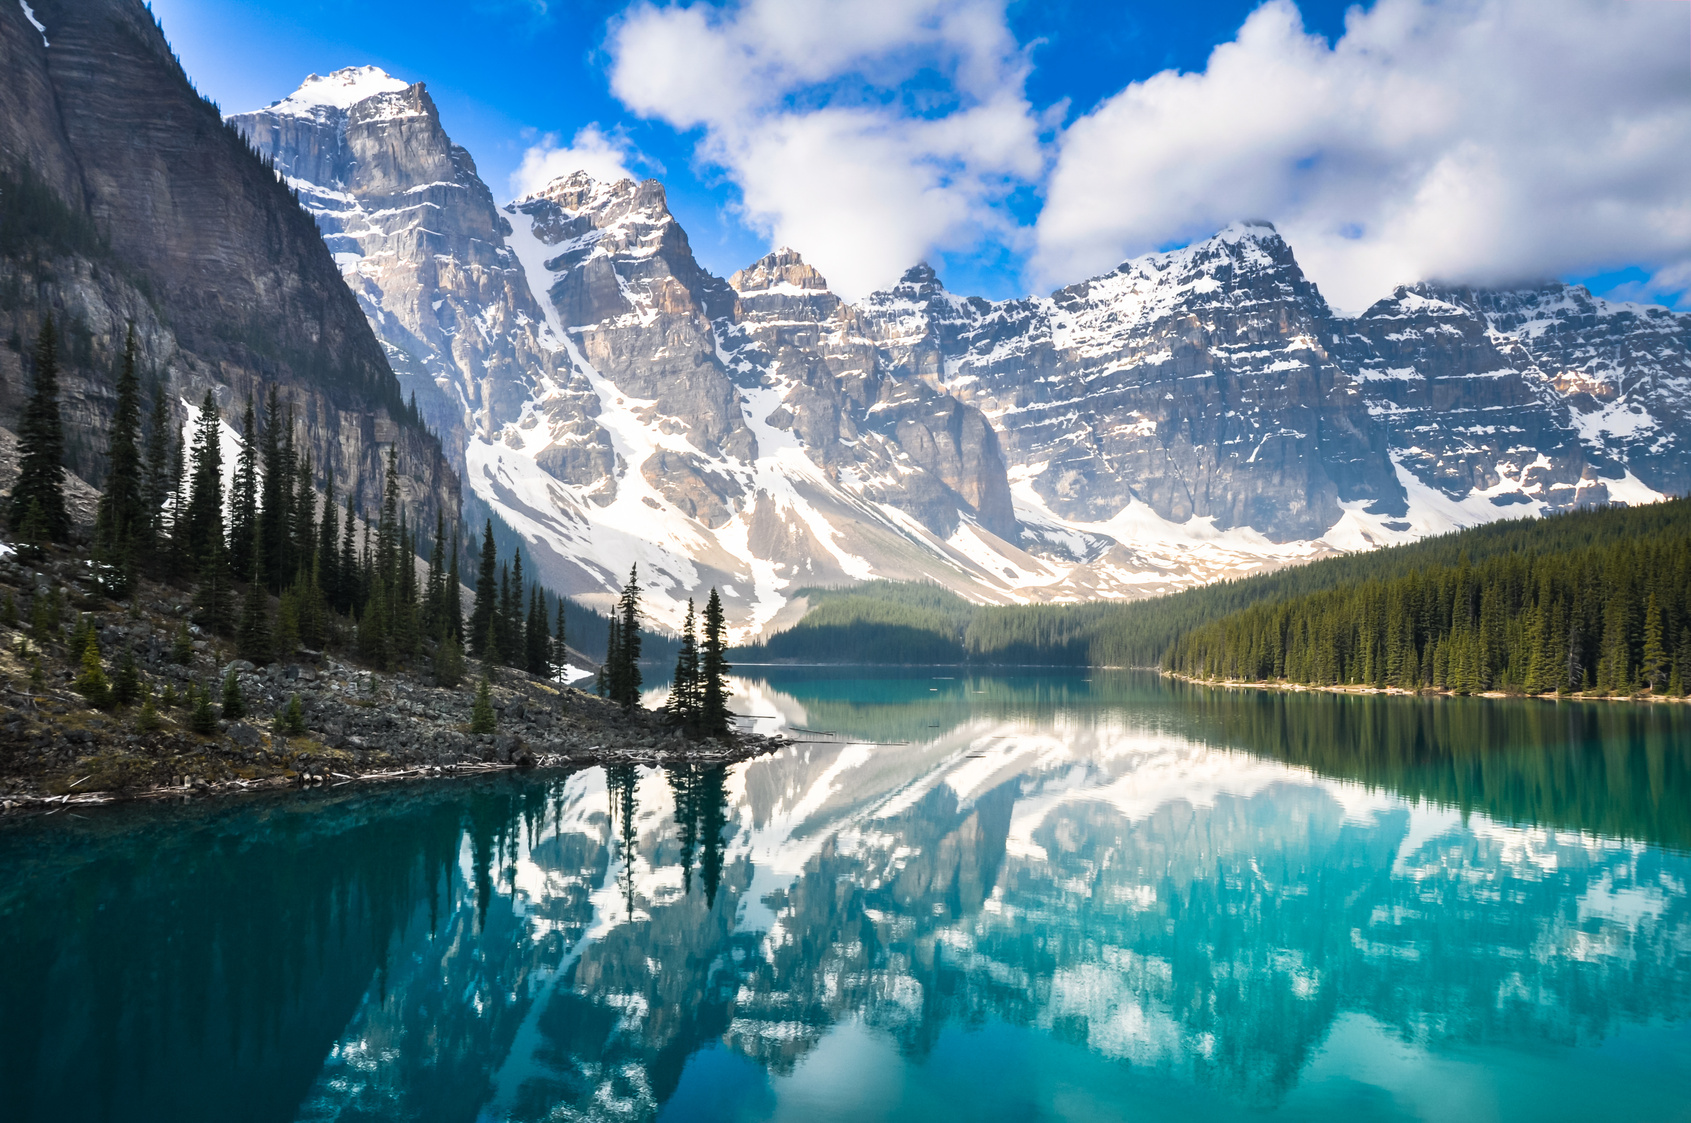 加拿大8大自然奇观让你一见倾心终生难忘| 加拿大自然奇观| 北极光| 亚省恐龙公园| 大纪元